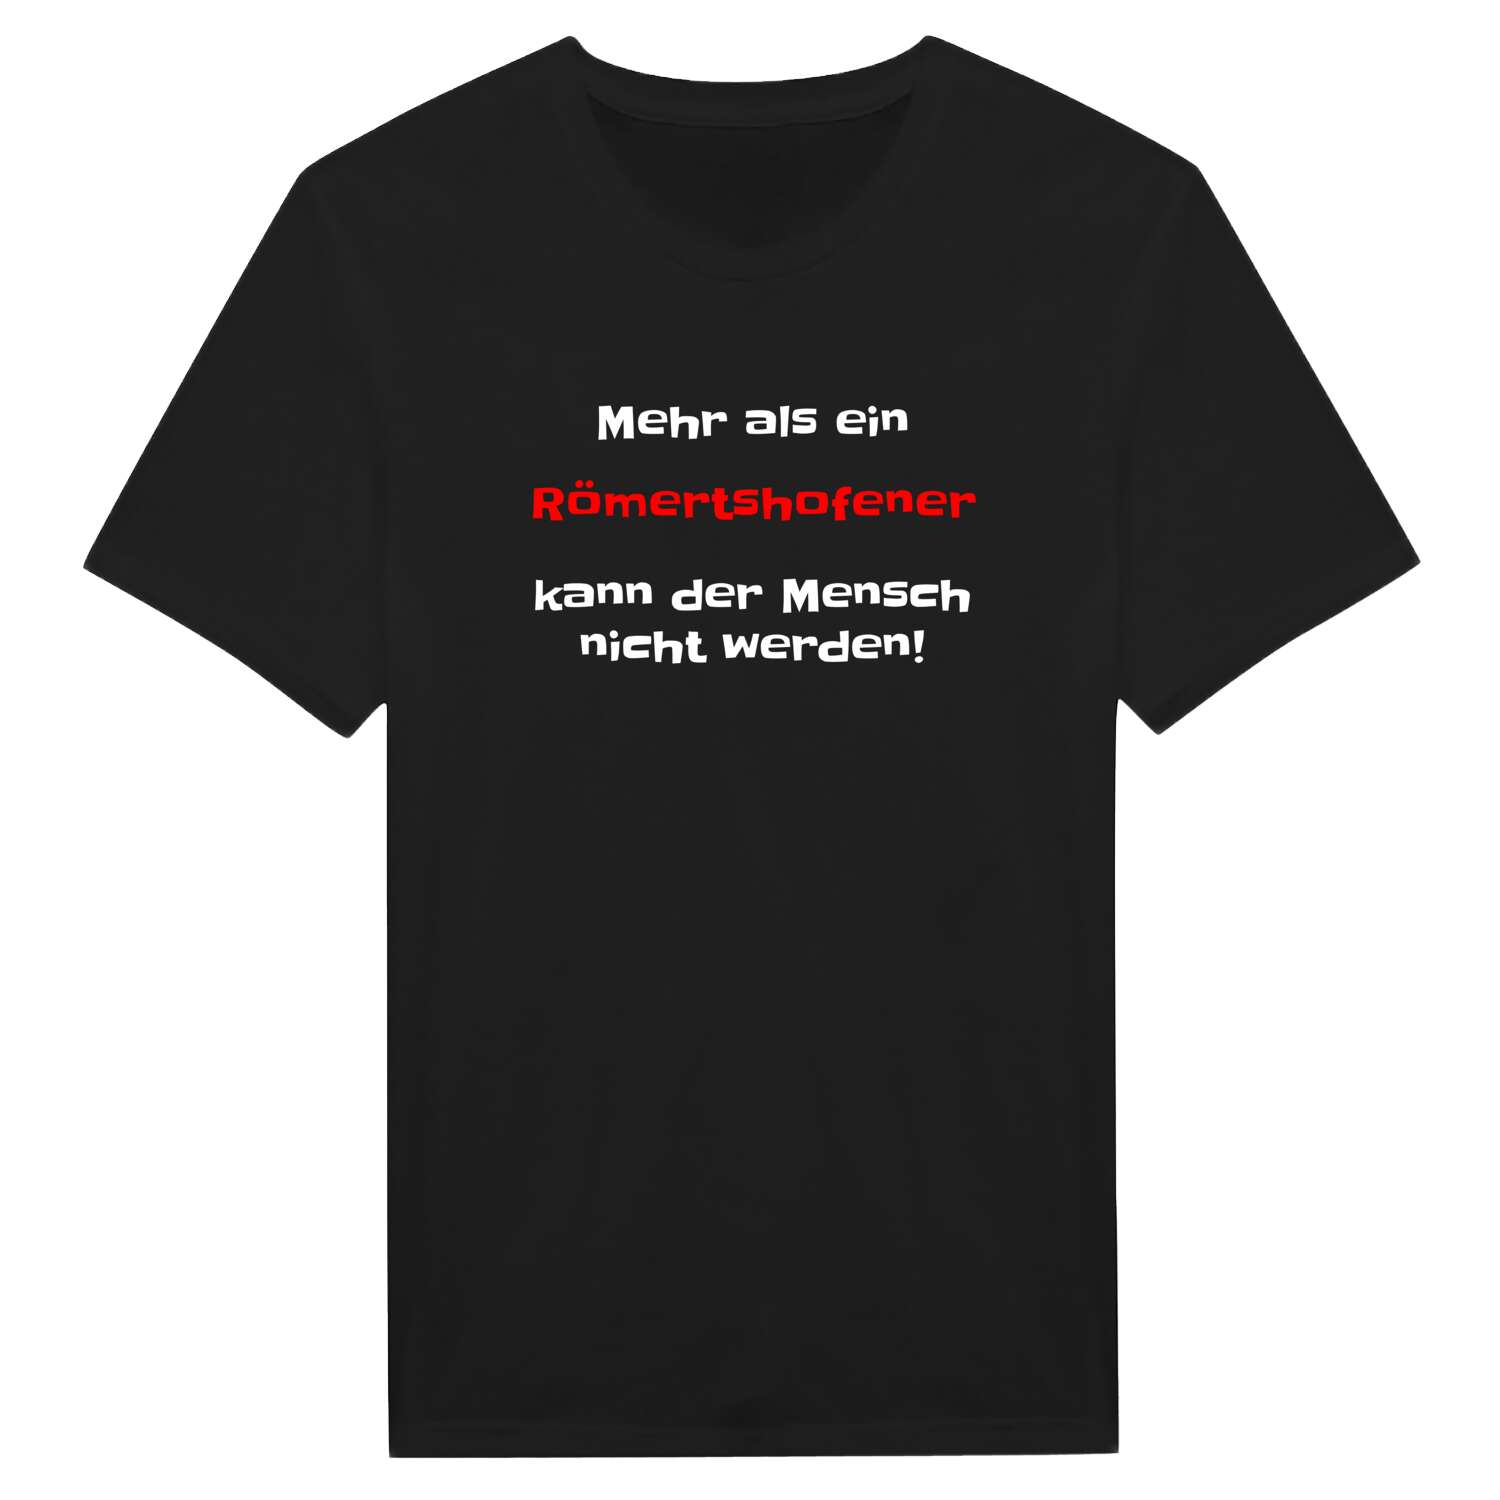 Römertshofen T-Shirt »Mehr als ein«